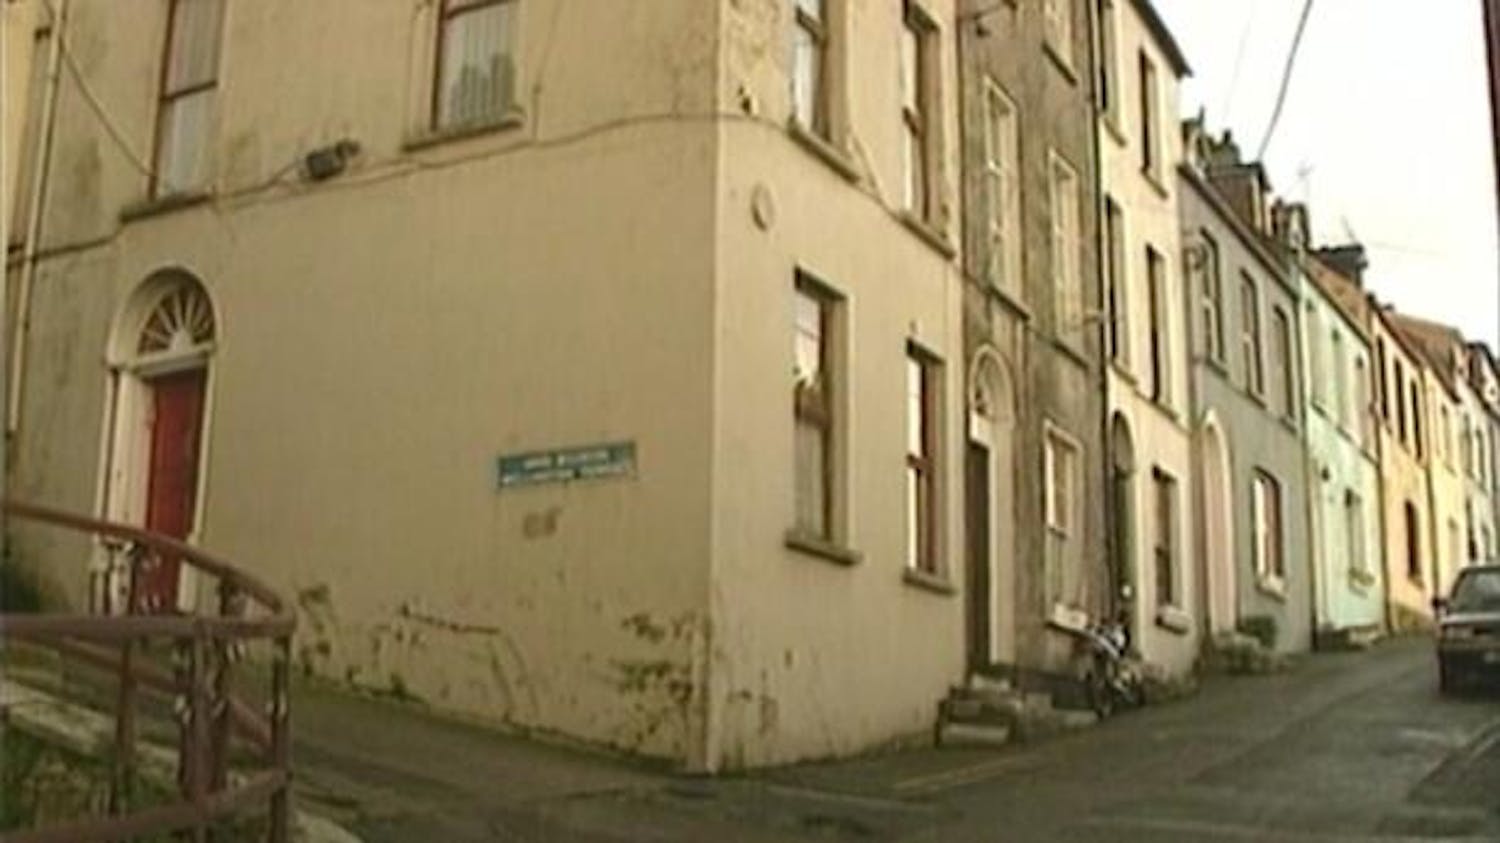 76 - House of Horrors: Cork's Missing Men